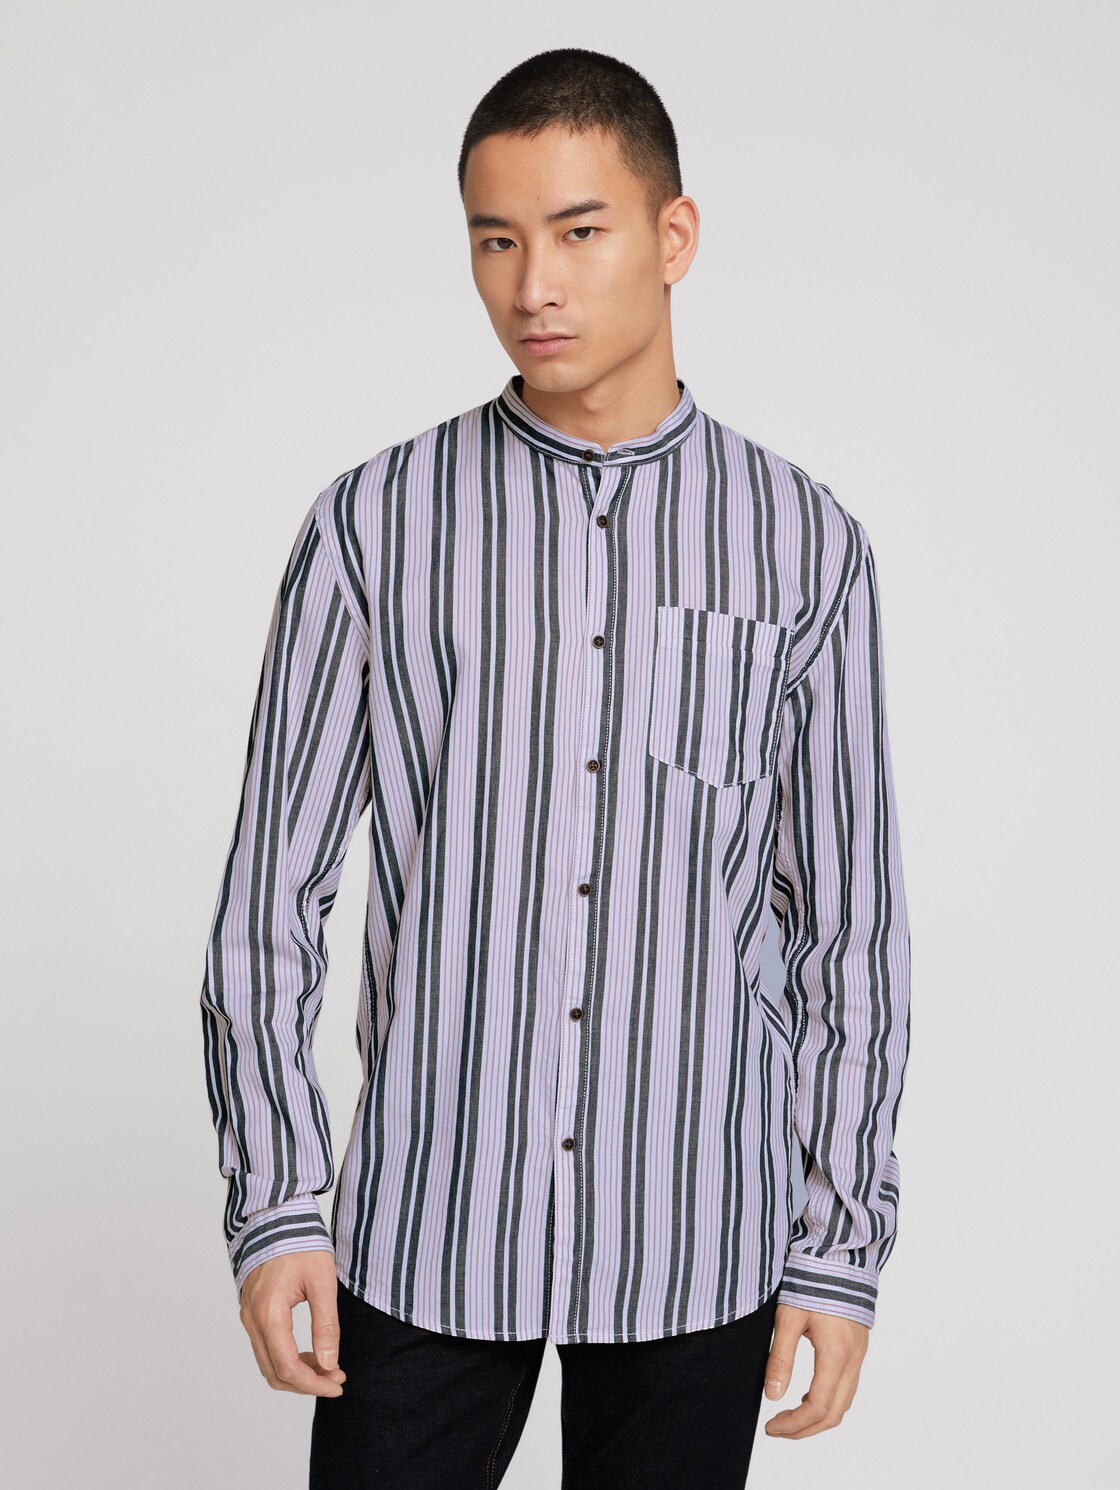 TOM TAILOR DENIM overhemd met patroon en opstaande kraag, navy berry big stripe, XXL